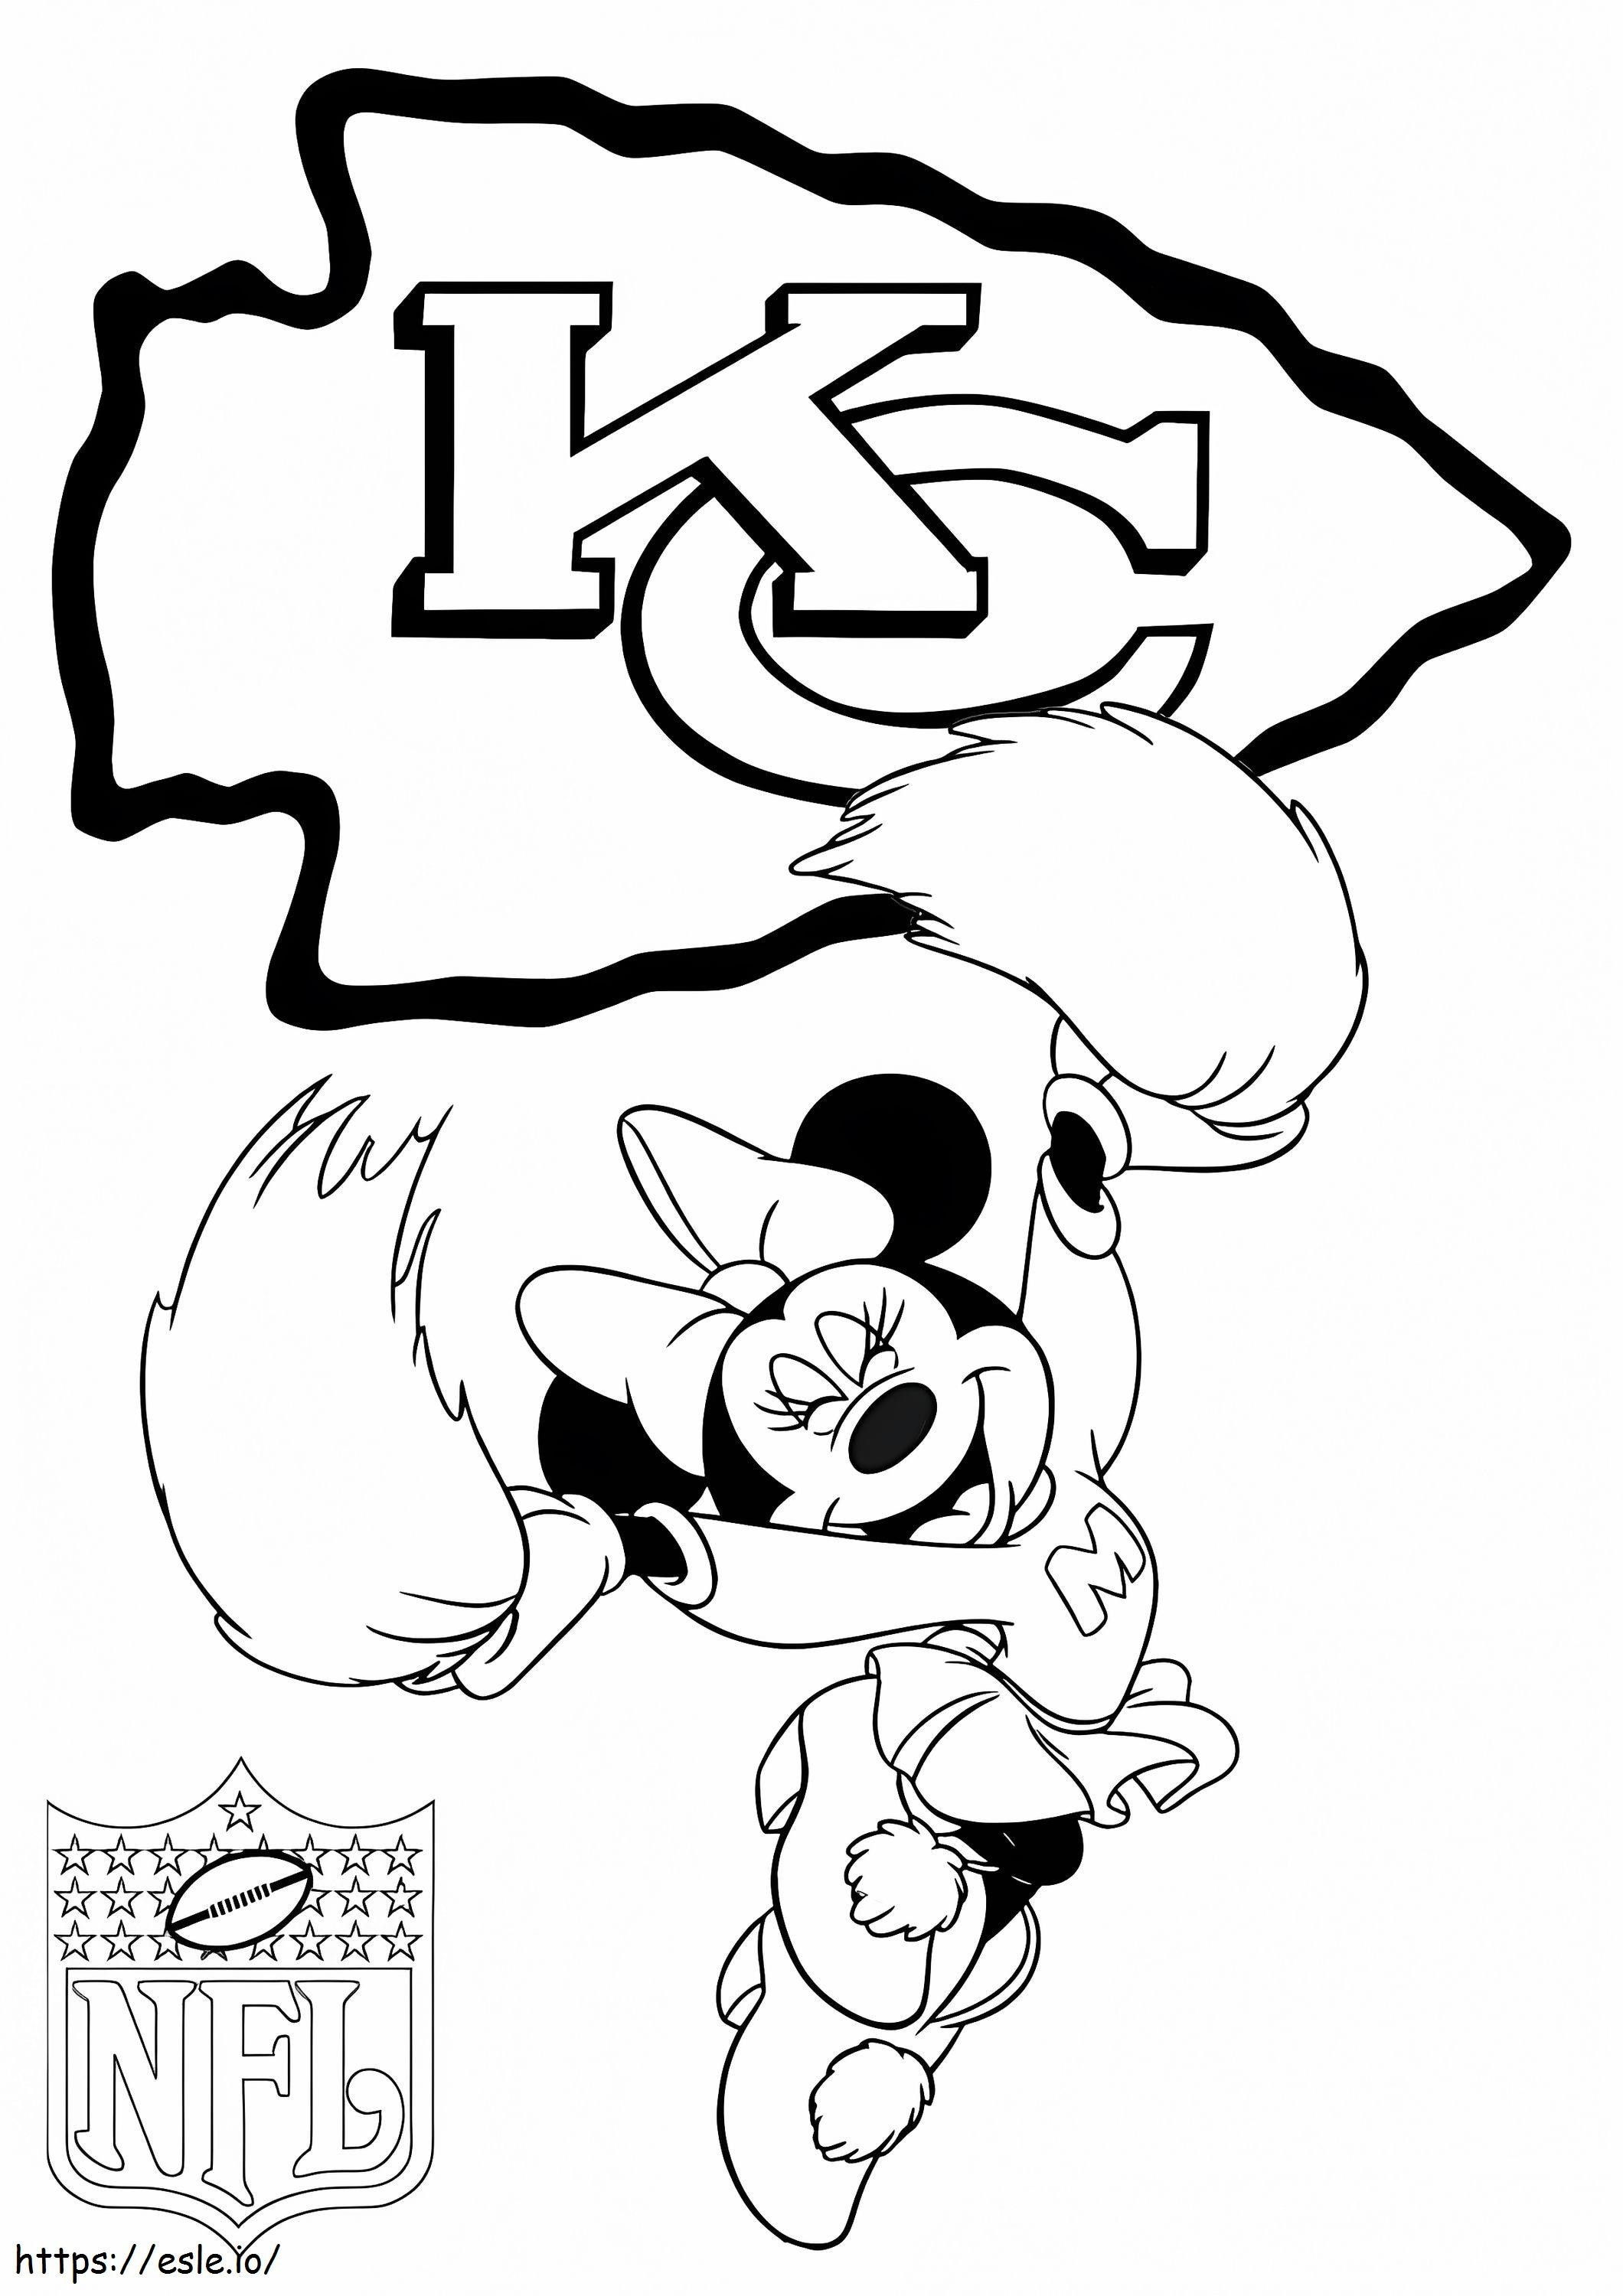 Chefes de Kansas City com Minnie Mouse para colorir